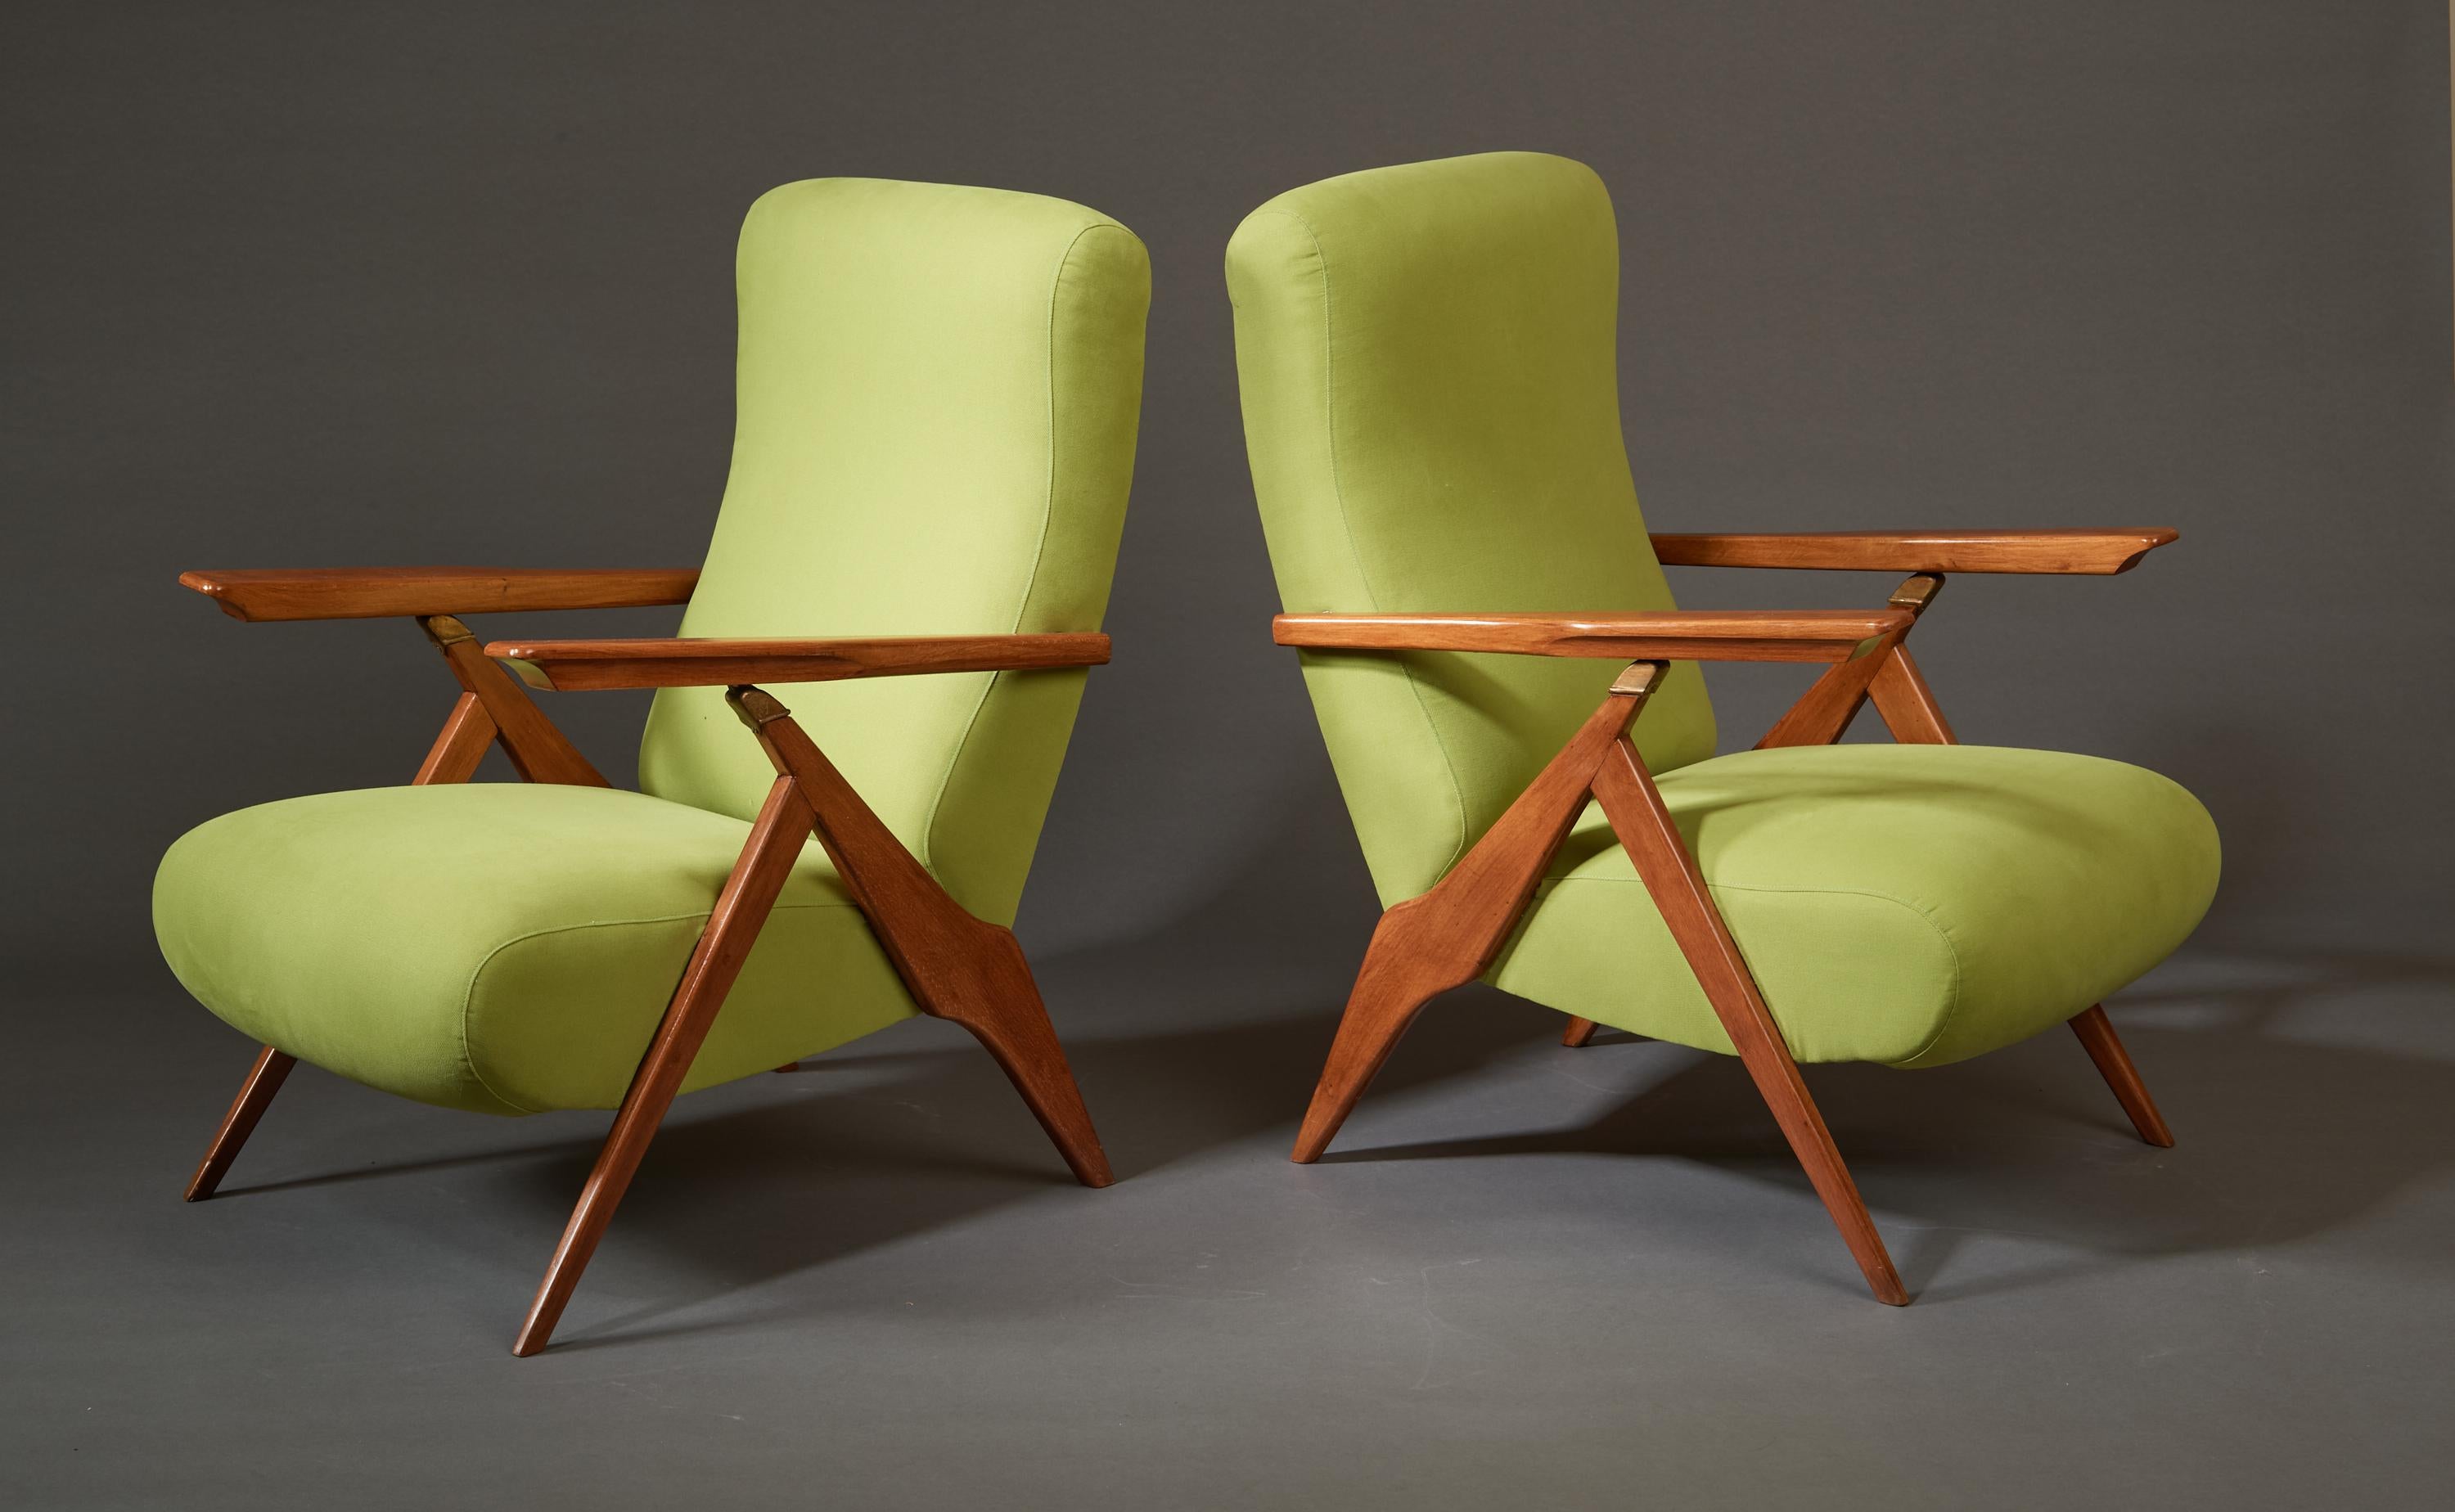 Italie, années 1950. 

Gracieuse paire de fauteuils inclinables réglables en bois fruitier teinté acajou avec détails en laiton, rembourrés en chartreuse claire. Les accoudoirs sculptés, reposant élégamment sur des ferrures en laiton, se soulèvent